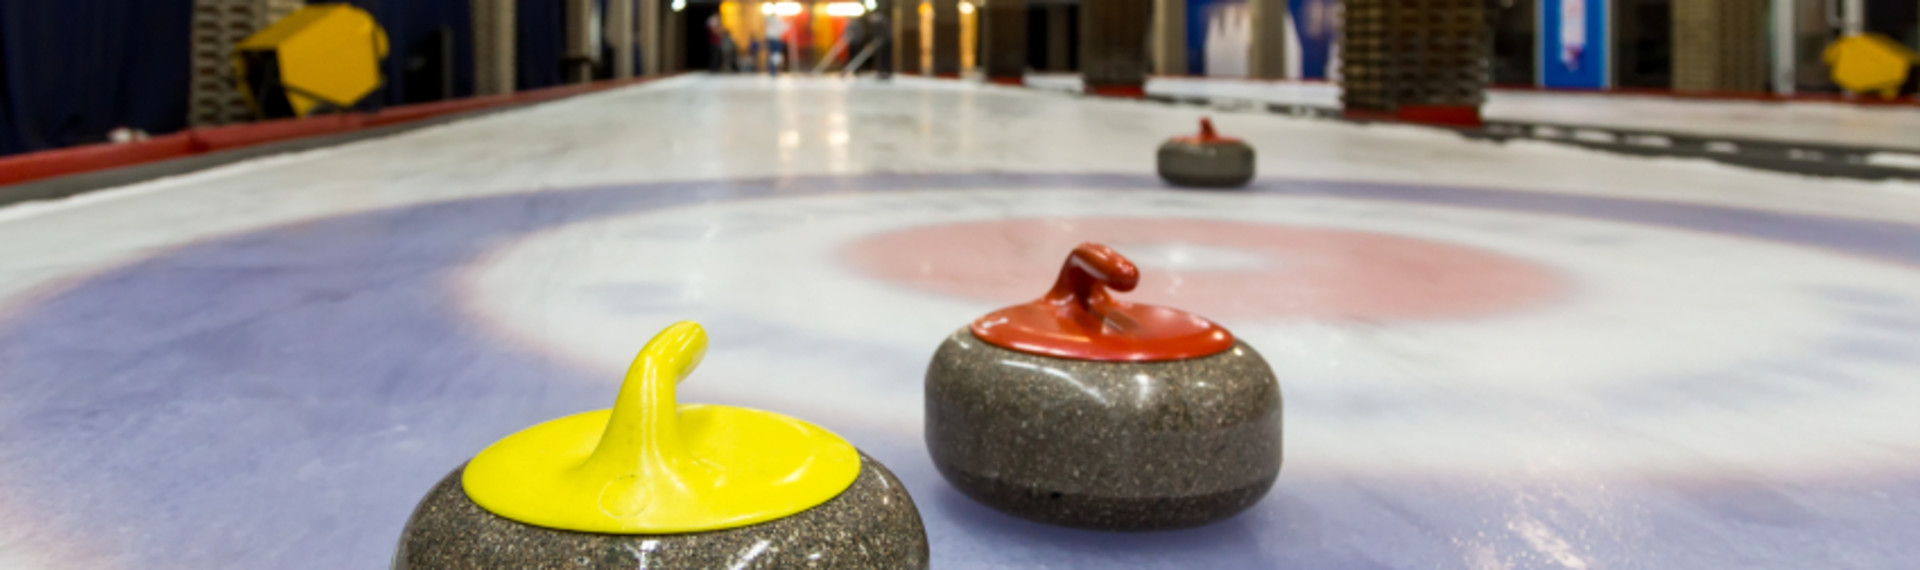 Curling - Prøv en omgang af den ædle vinter sport i Bratislava